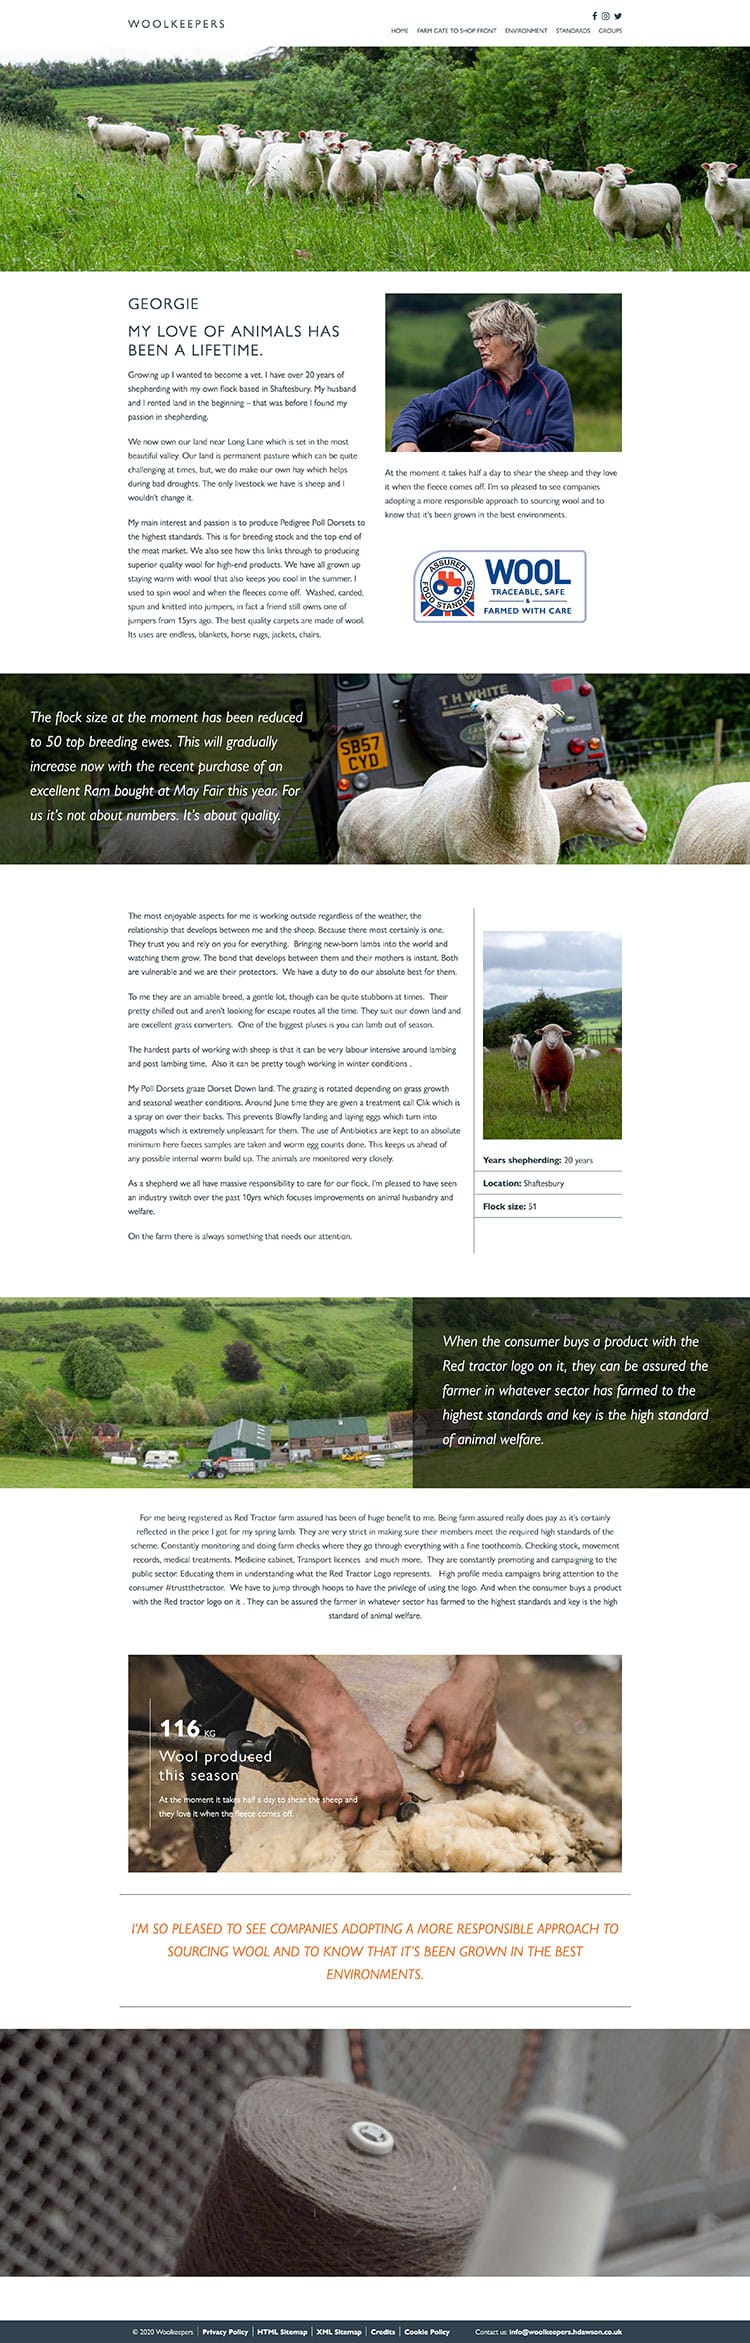 Woolkeepers website